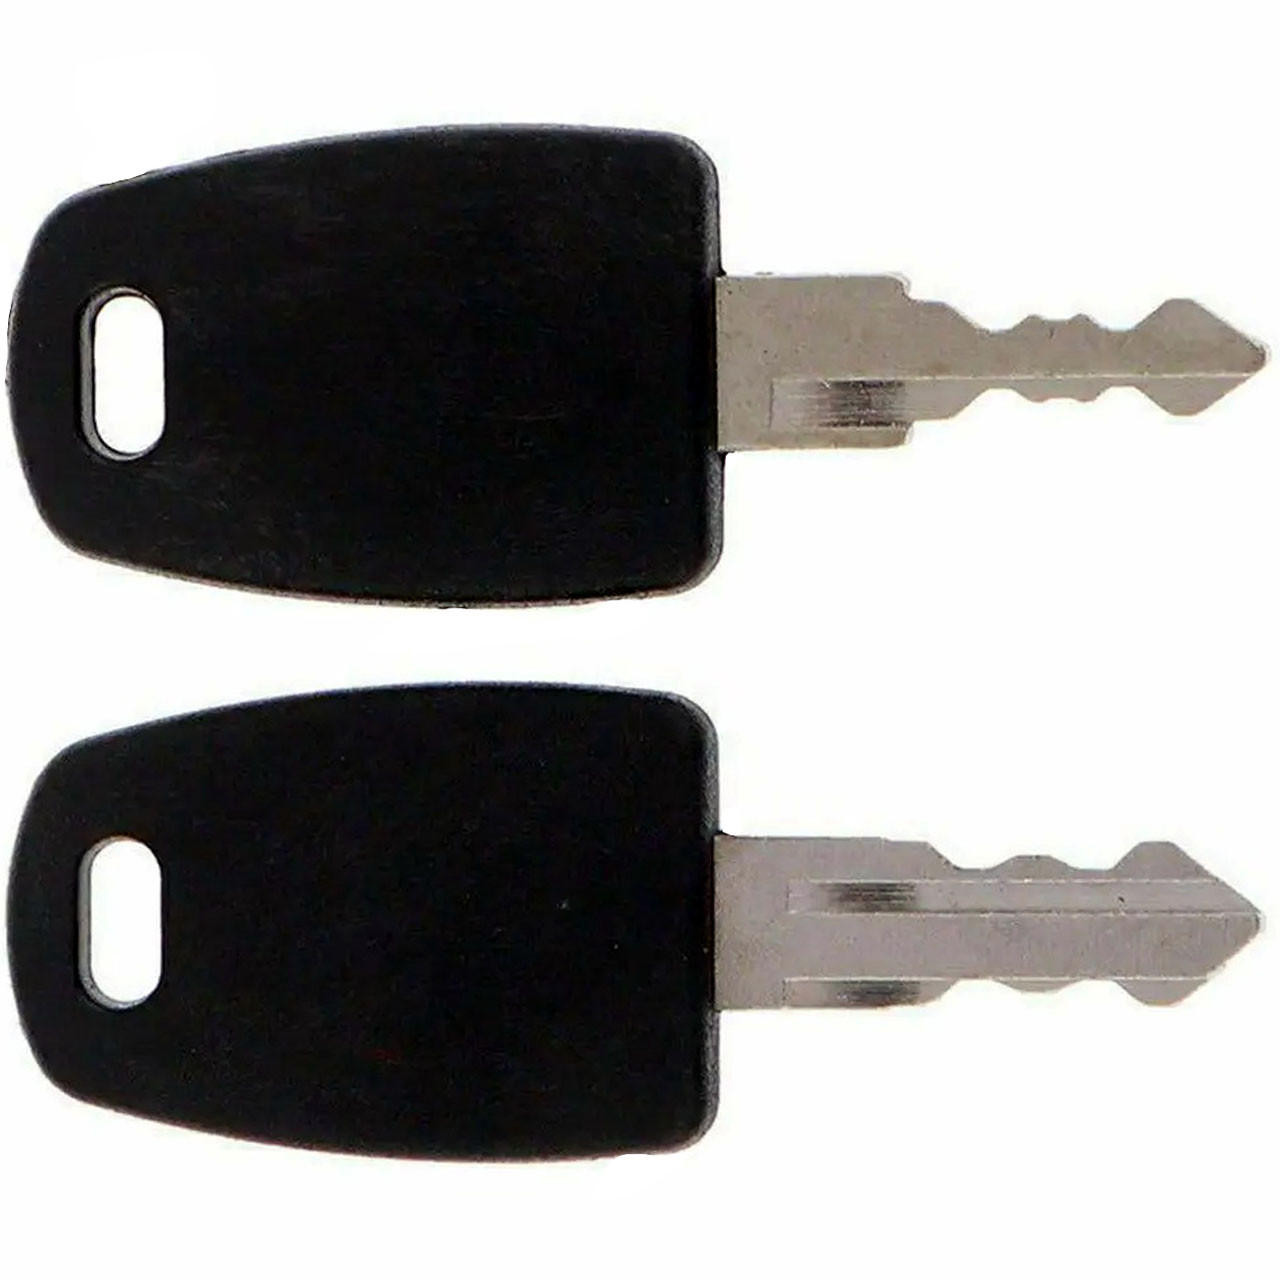 TSA Lock Key - Open TSA approved locks with ease. TSA 002 u0026 007 [Buy Now]